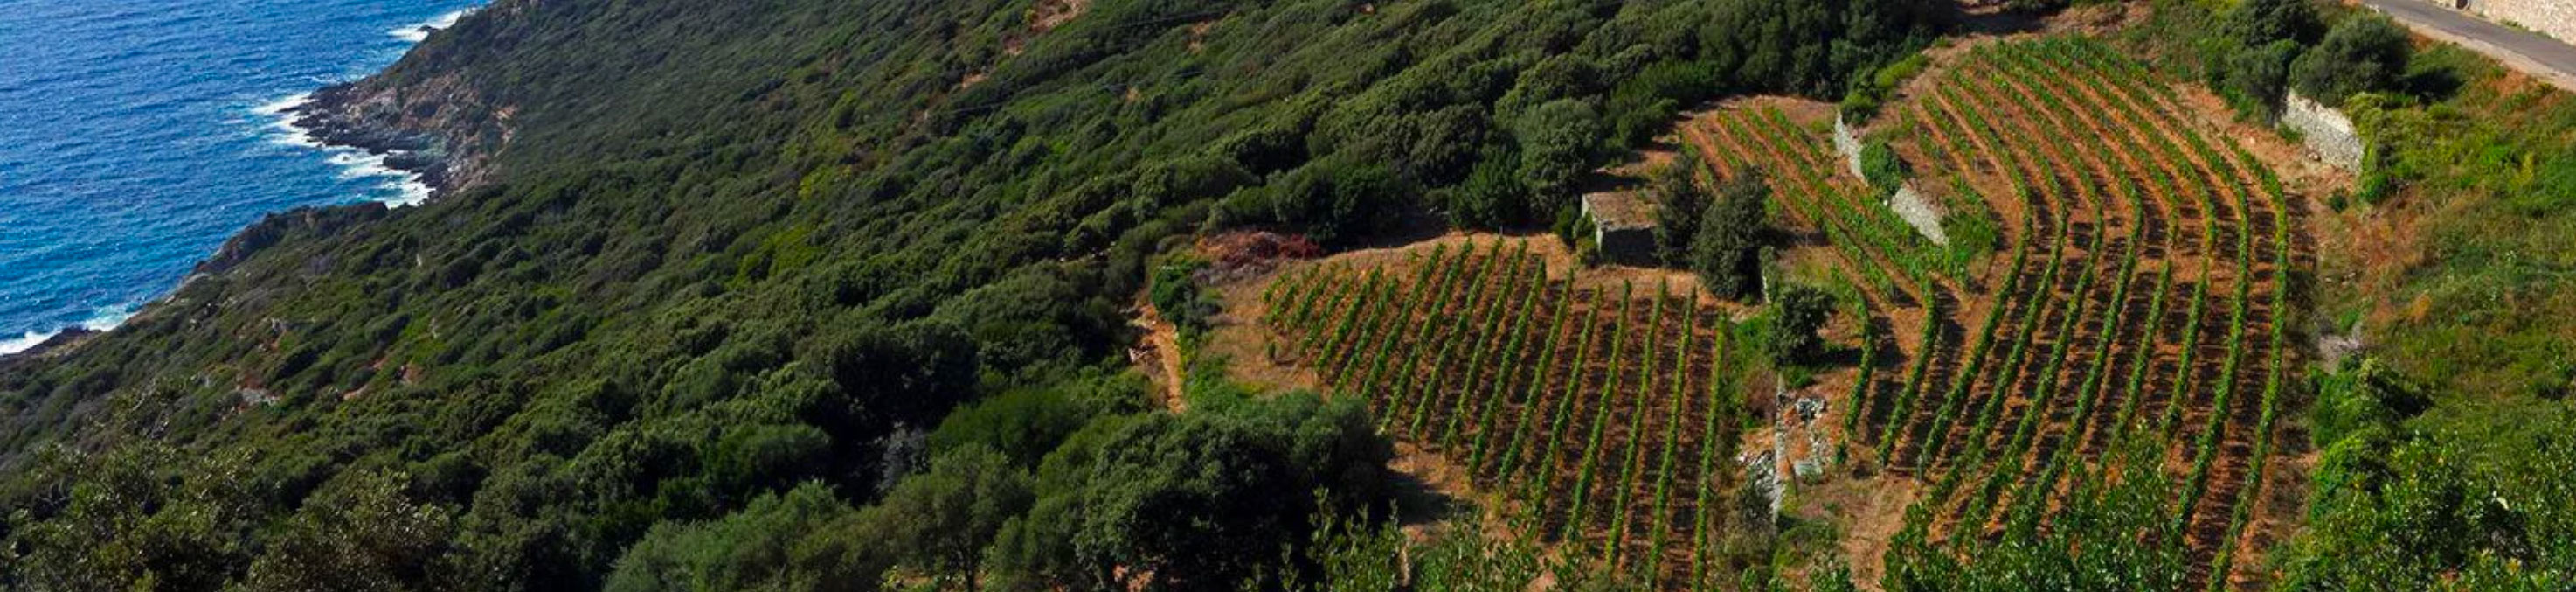 Corse_Figari_vineyards